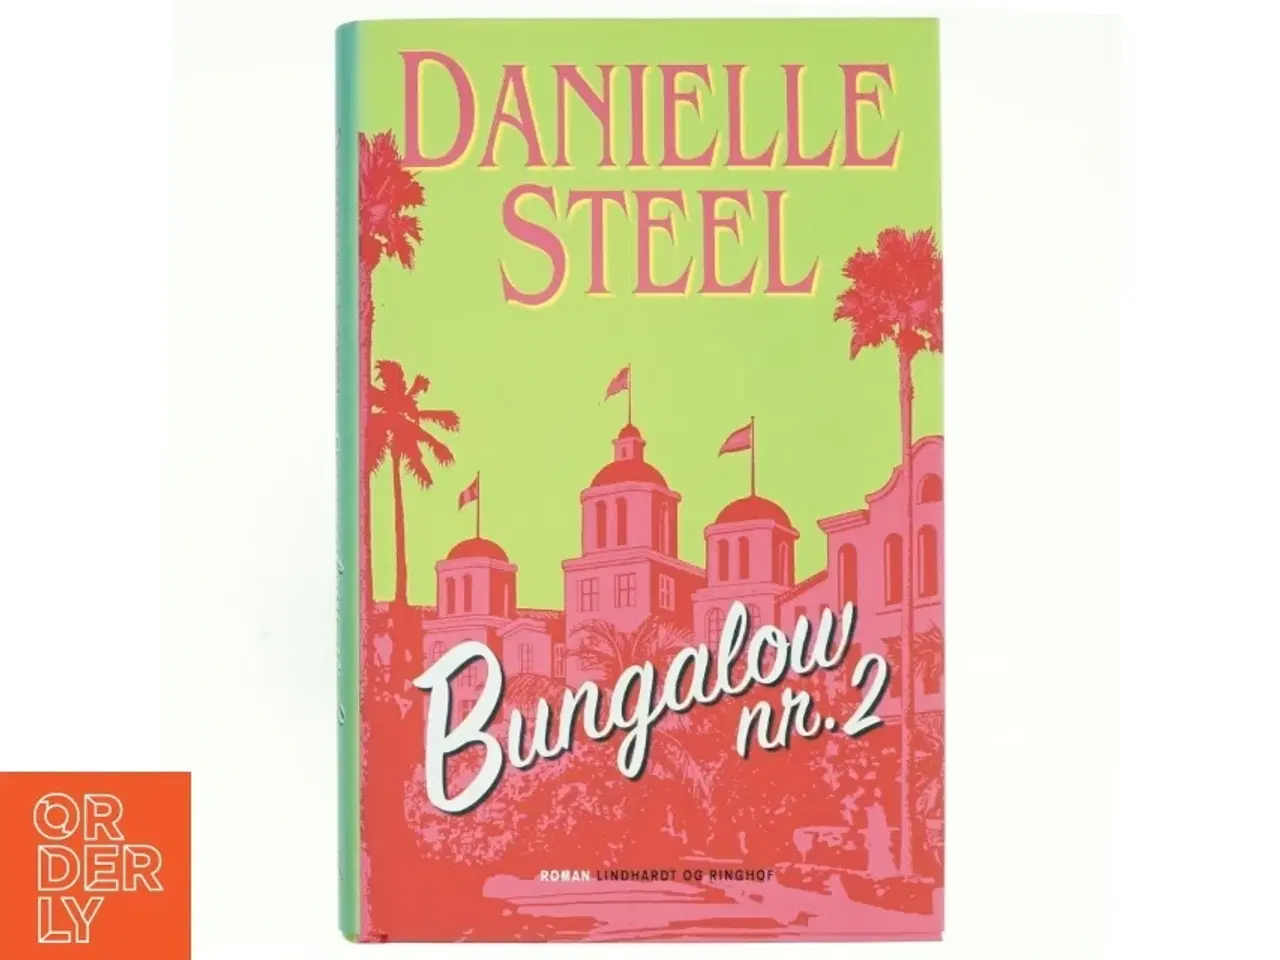 Billede 1 - Bungalow nr. 2 af Danielle Steel (Bog)